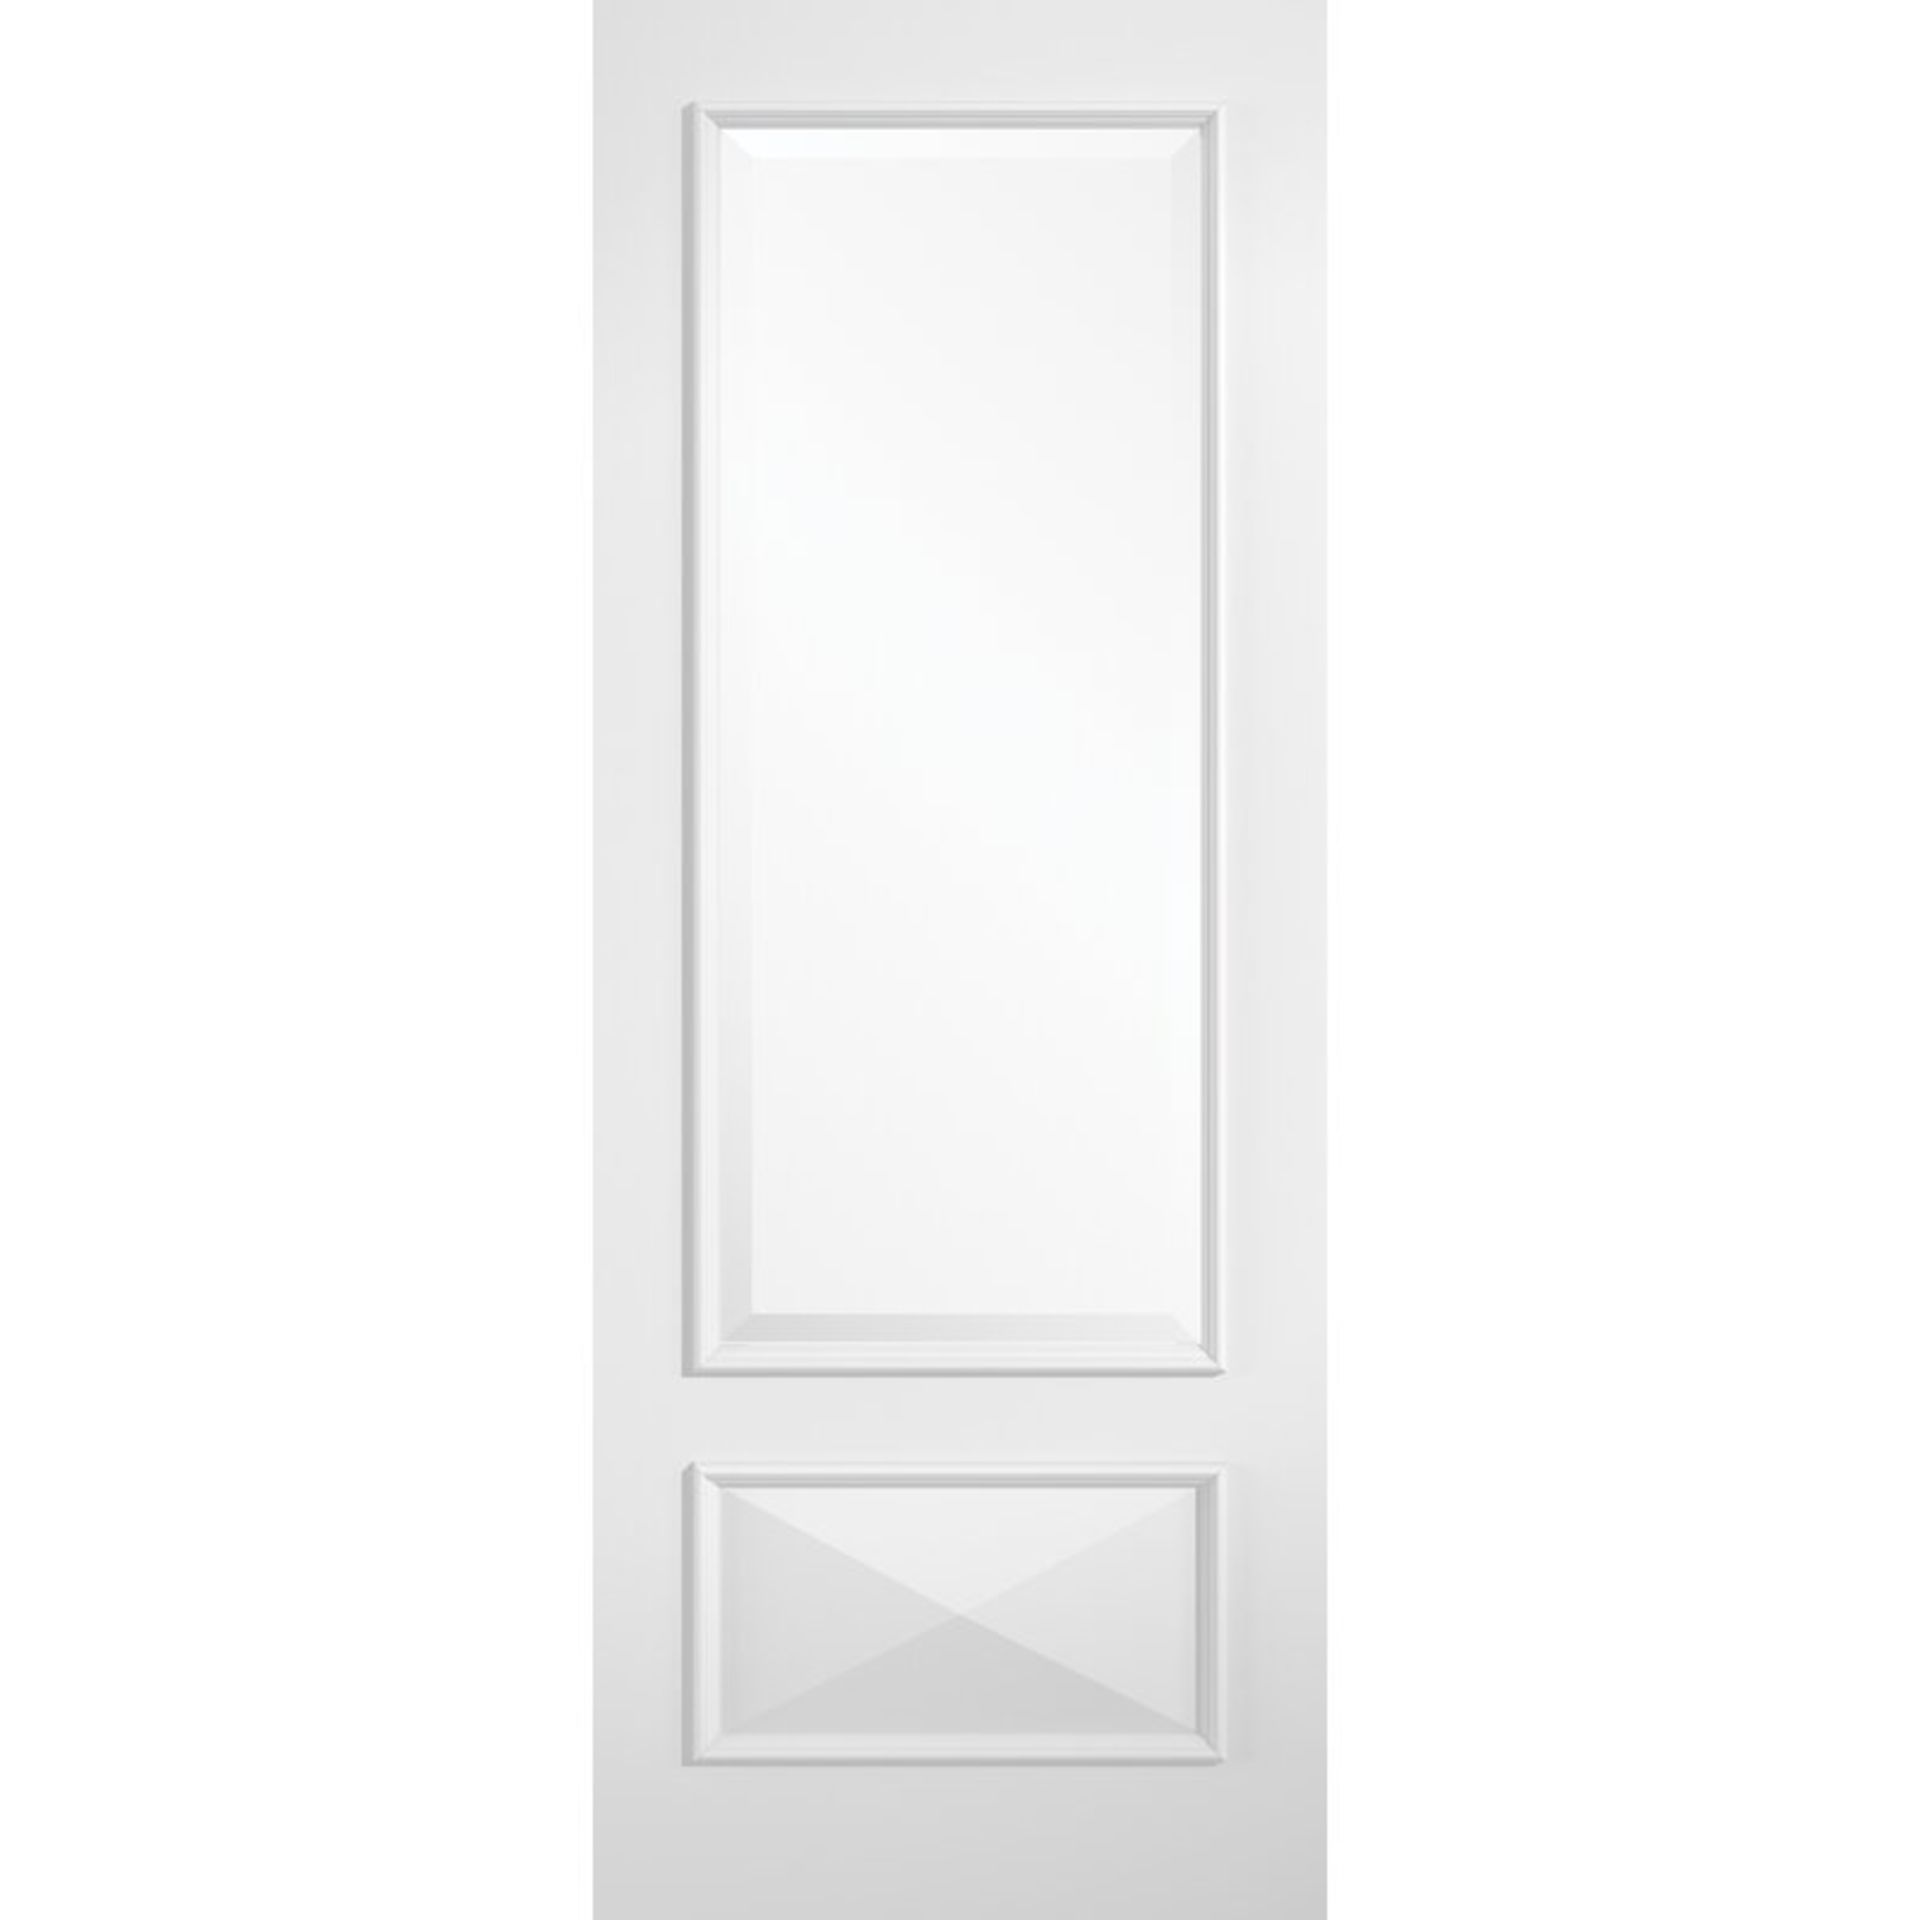 KNIGHTSBRIDGE INTERNAL SOLID DOOR. DOOR SIZE:198CM H x 68CM W x3.5CM D. RRP £719.99